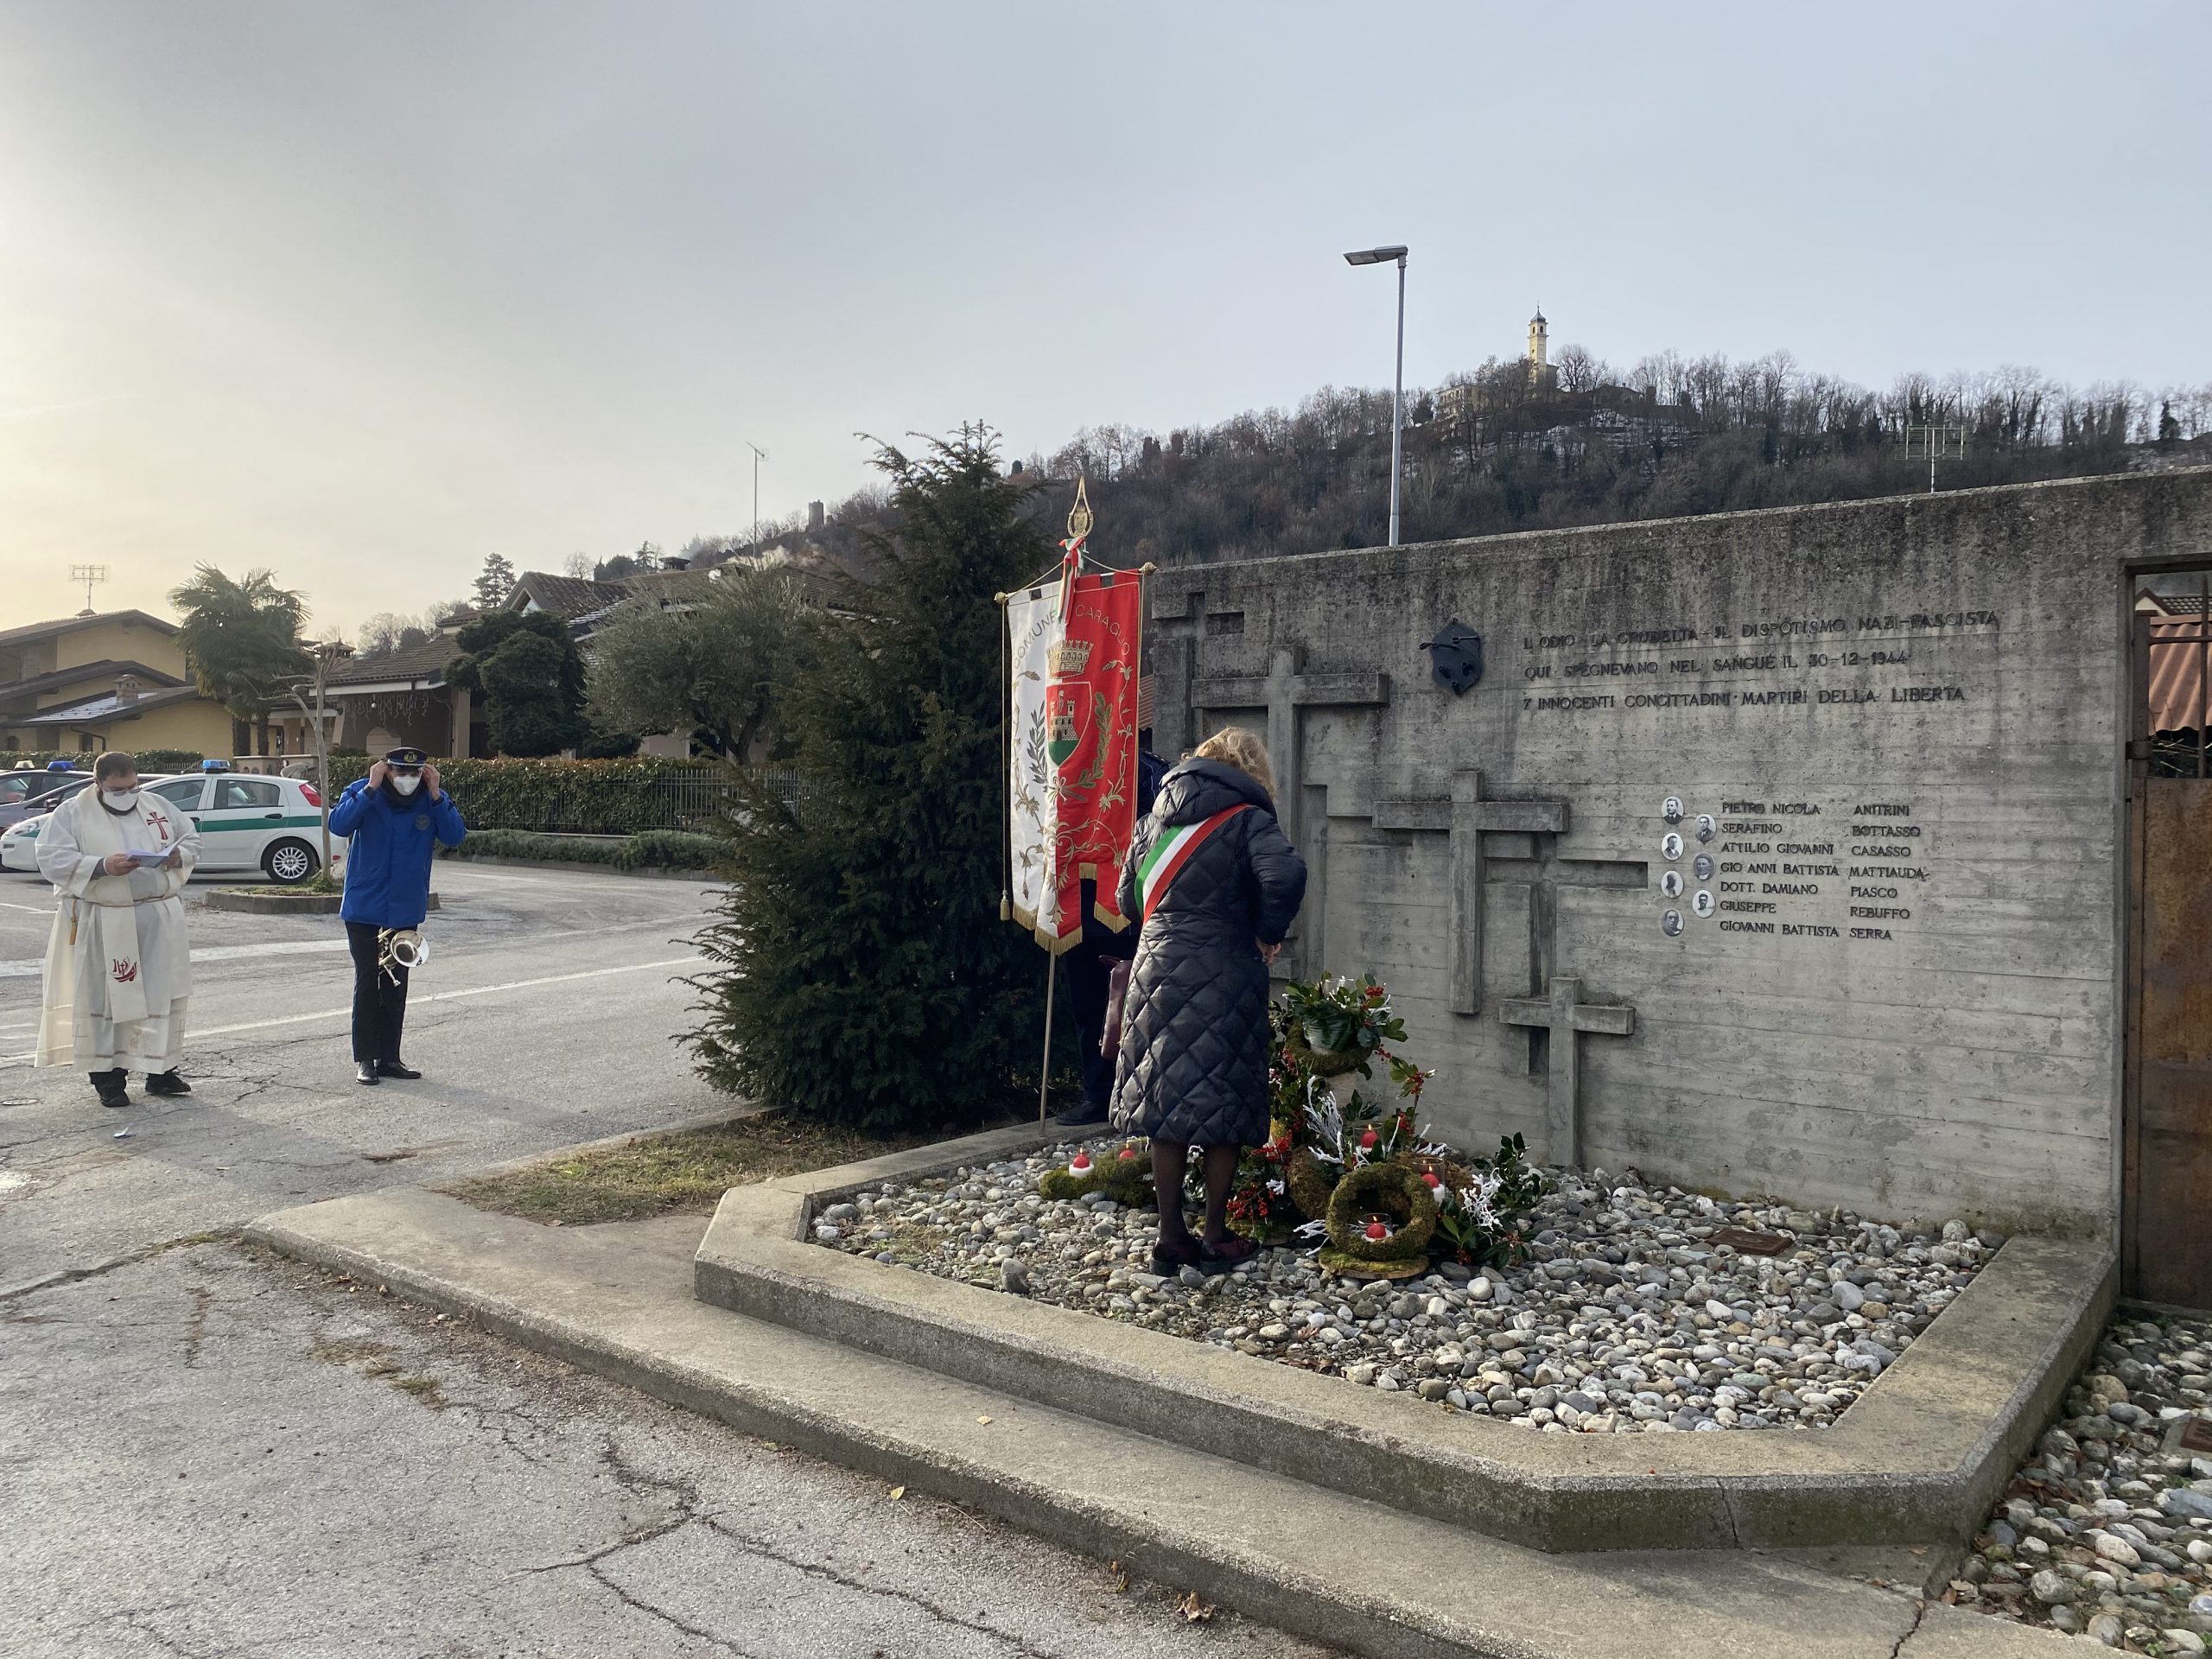 Caraglio - Monumento dei 7 martiri